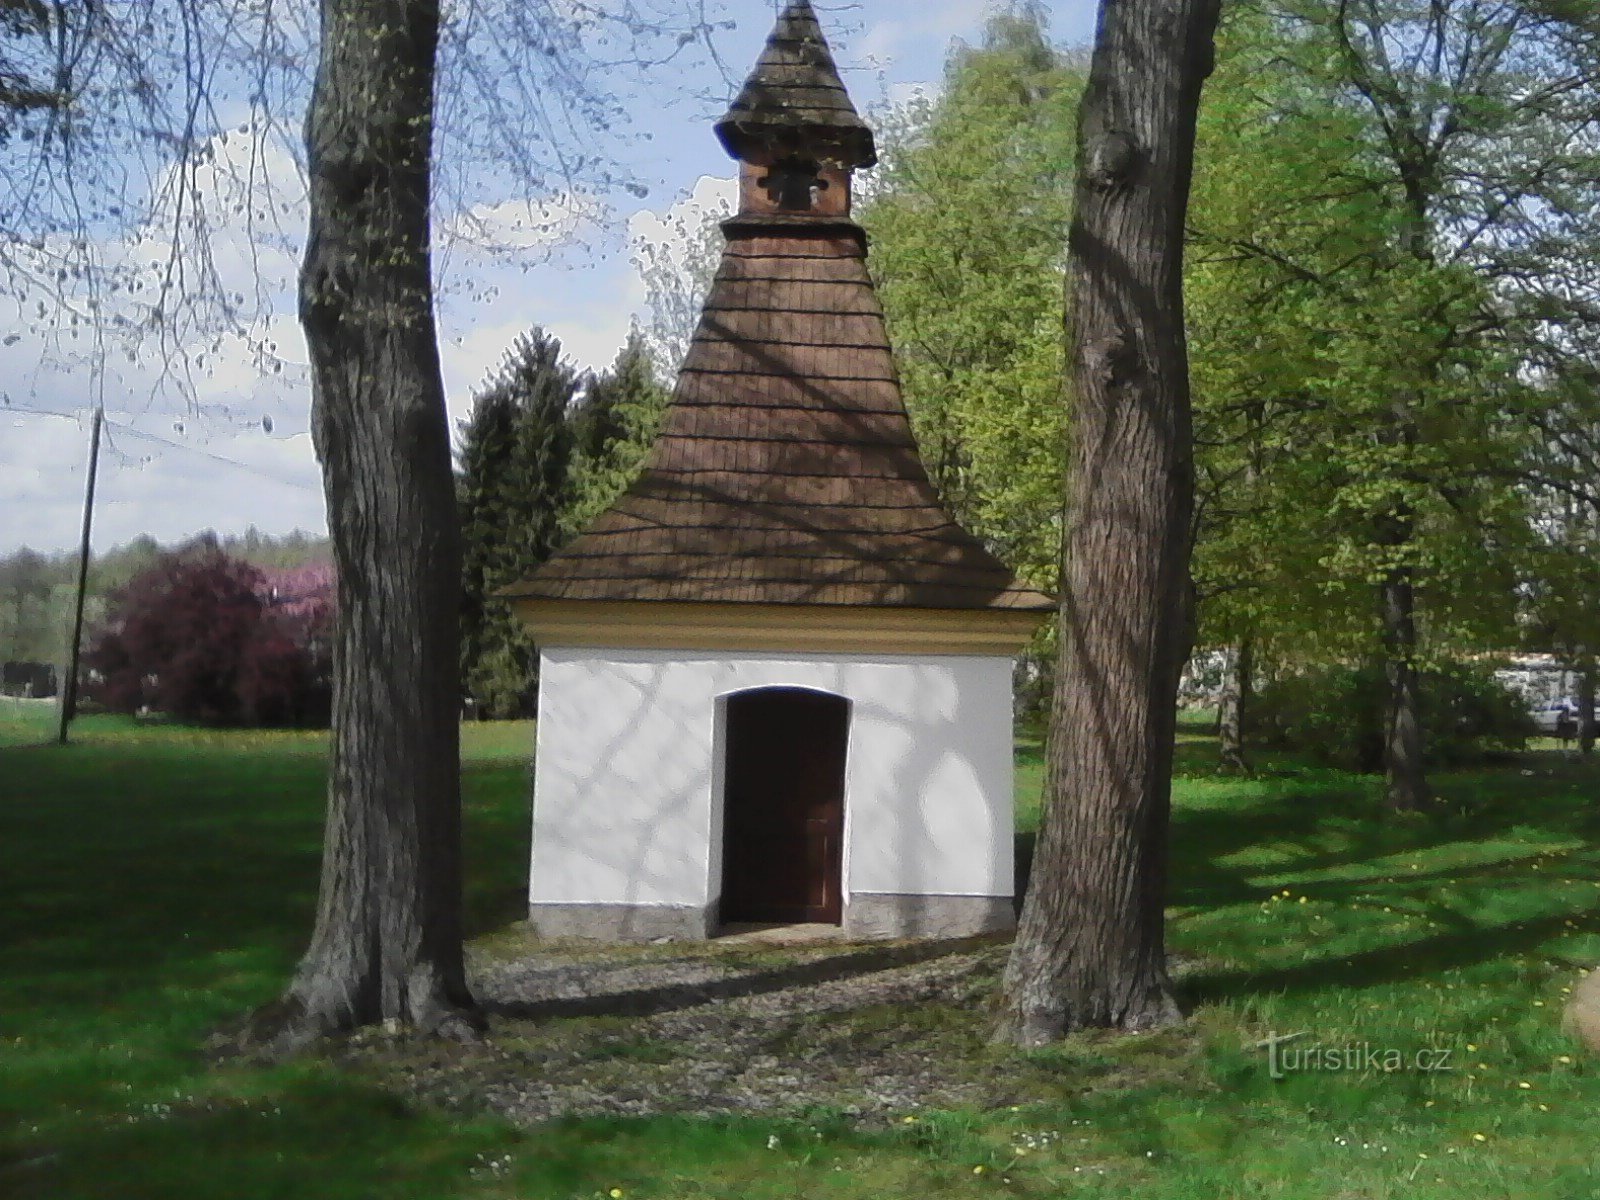 1. Capela da vila de S. Anna em Leskovice da virada dos séculos XVIII e XIX.